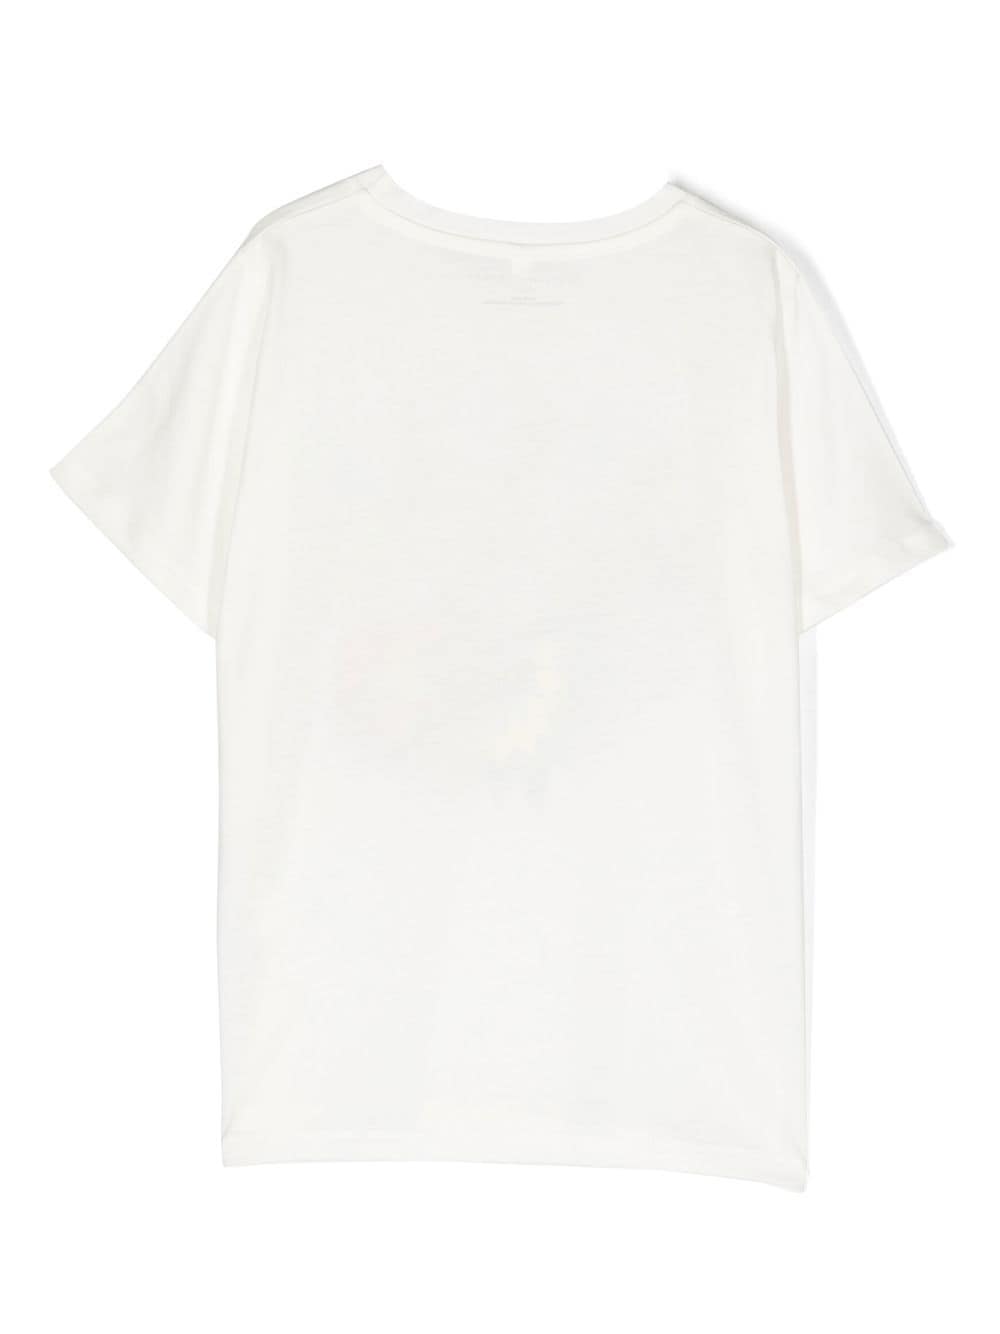 T-shirt bianca per bambino con stampa